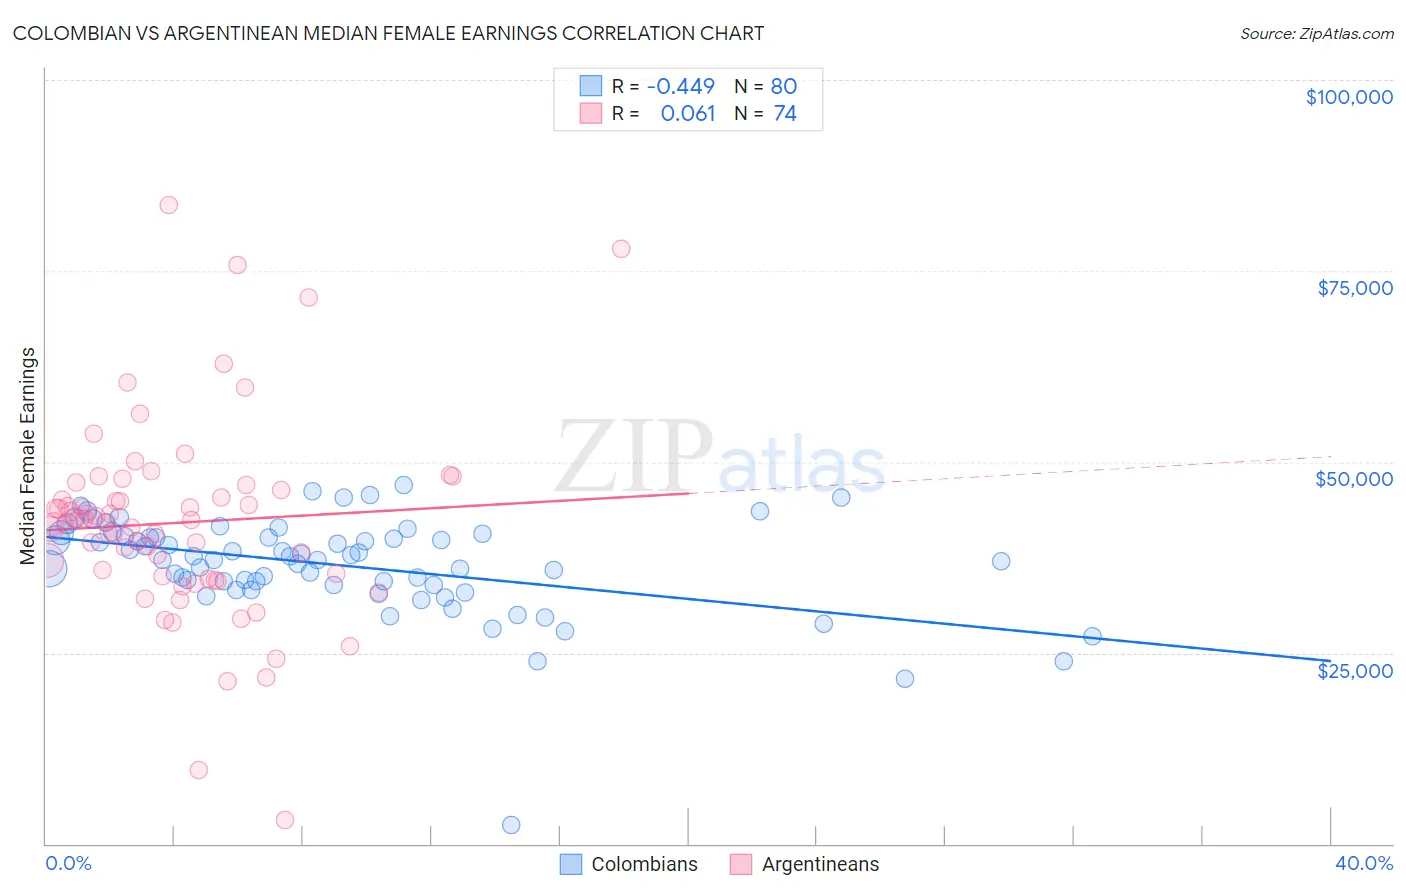 Colombian vs Argentinean Median Female Earnings